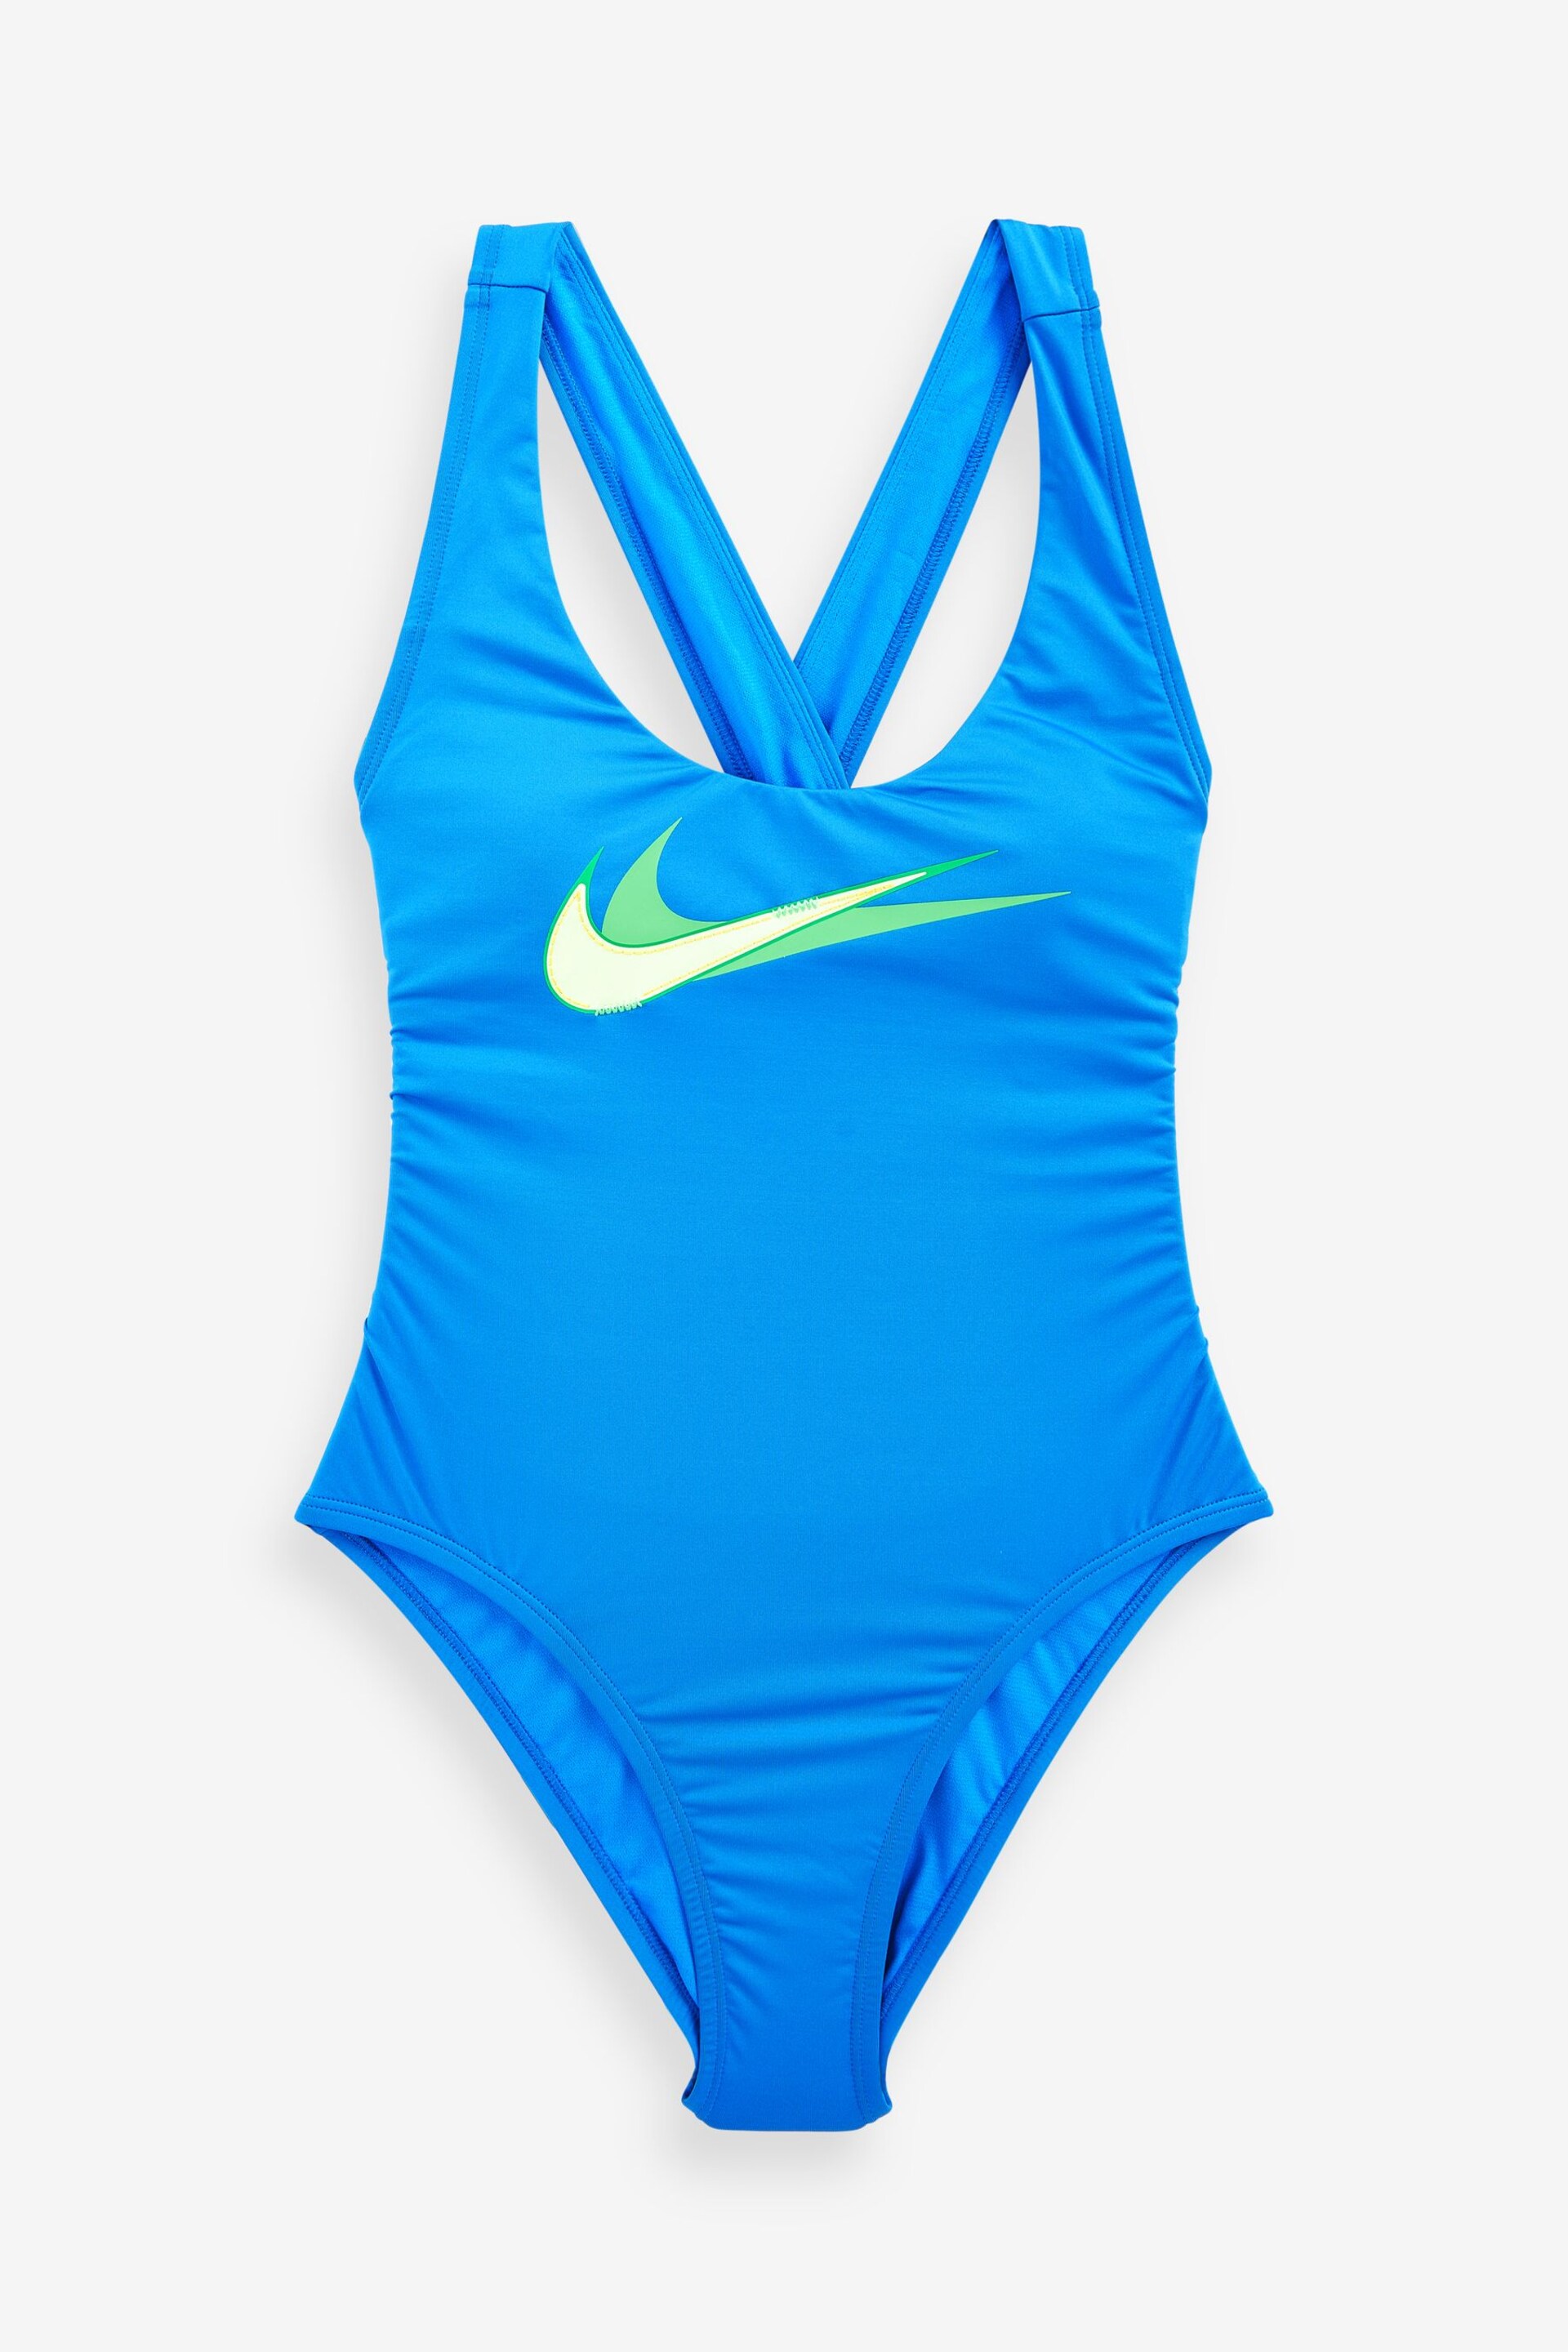 Nike Swim Blue Multi Logo Swimsuit - Image 5 of 5